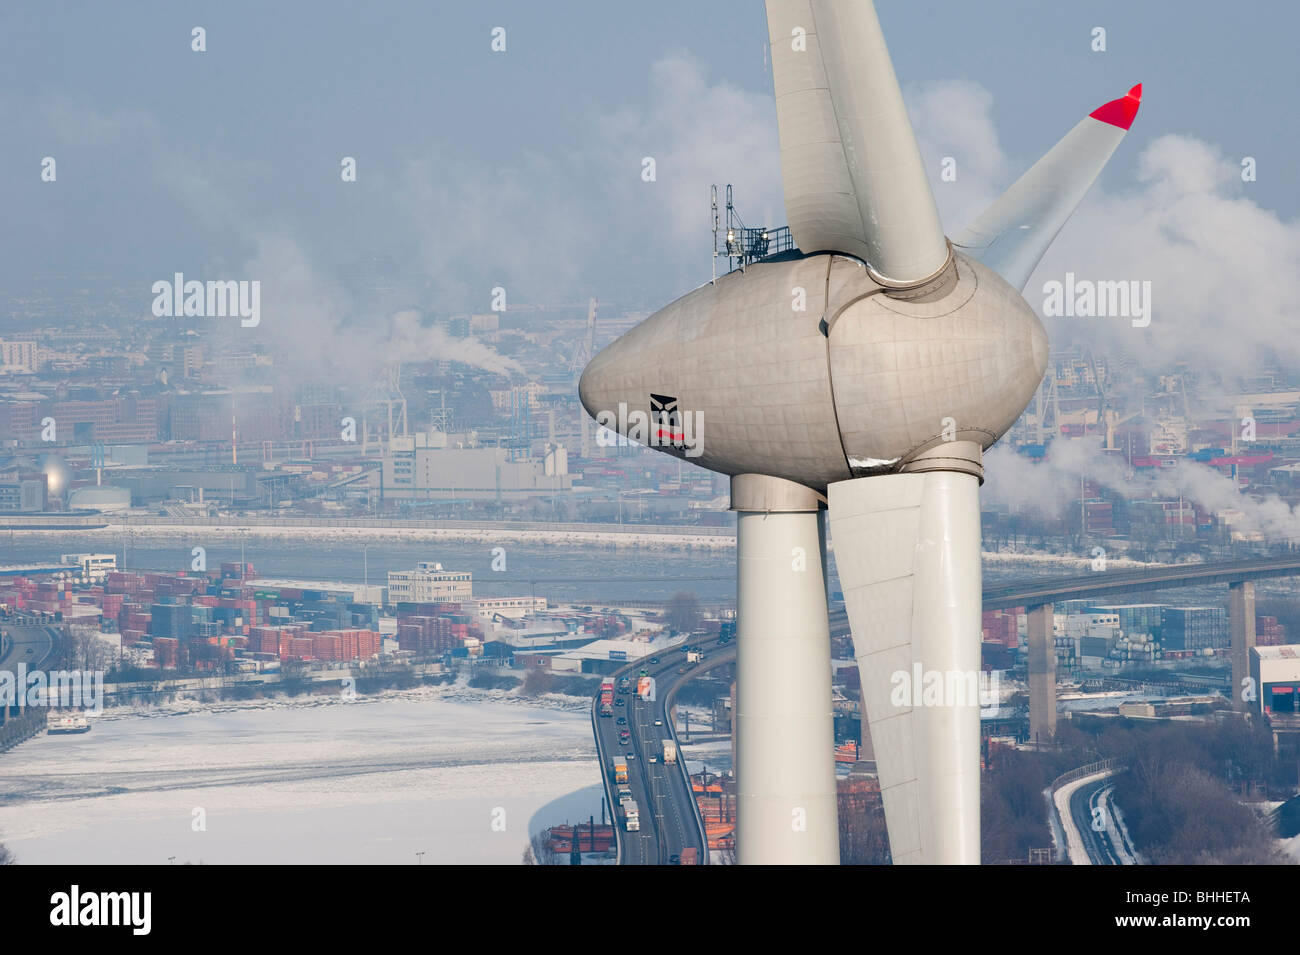 Allemagne Hamburg - éoliennes Enercon E-126 avec 6 MW dans le port et vue sur la ville de Hambourg Banque D'Images